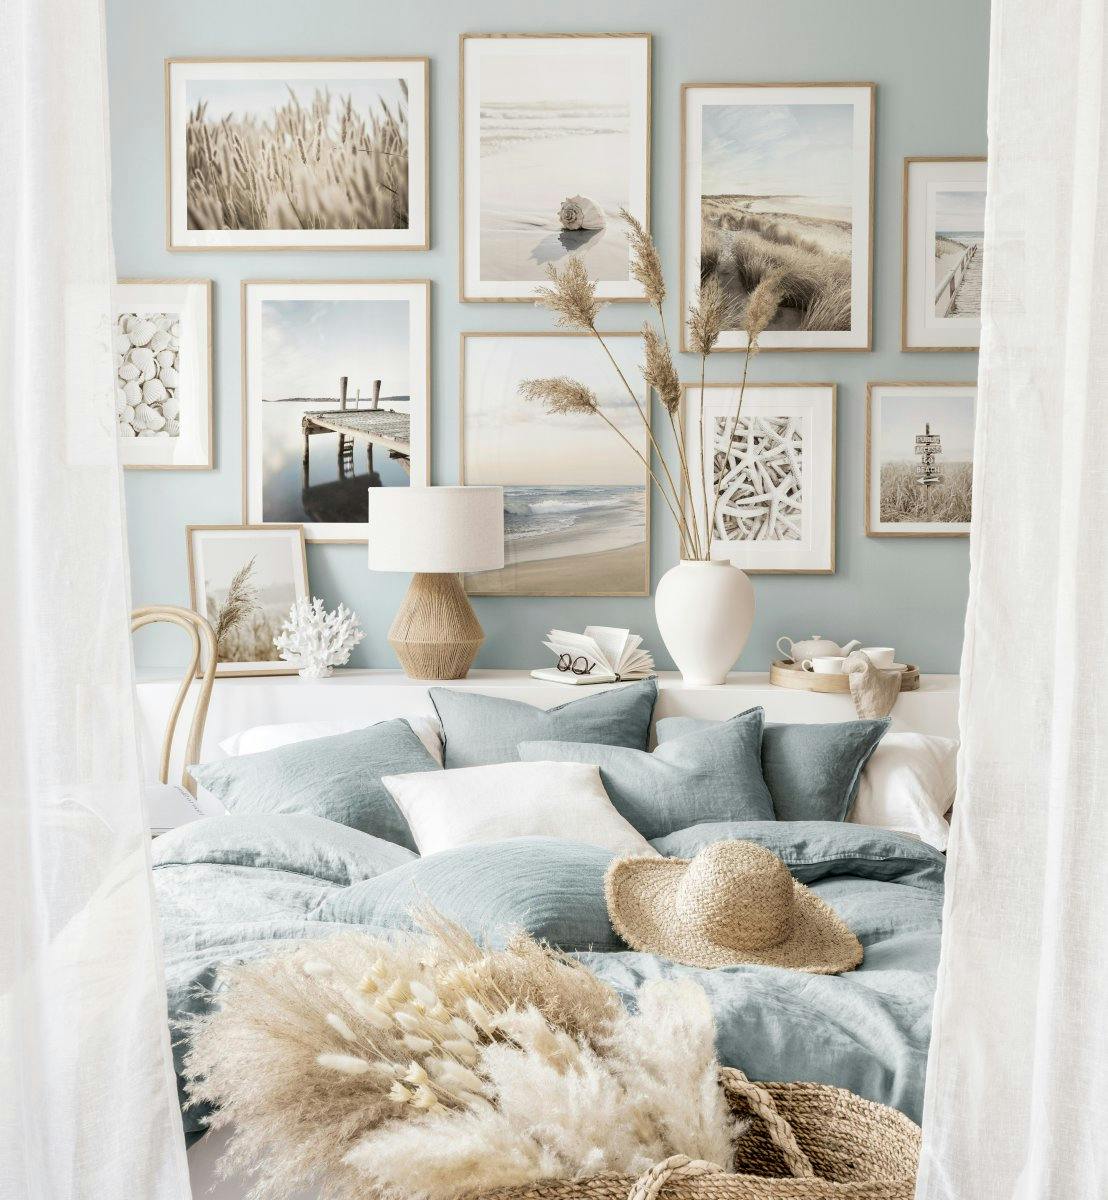 Modrý interiér pokoje ložnice motivy pláže a moře